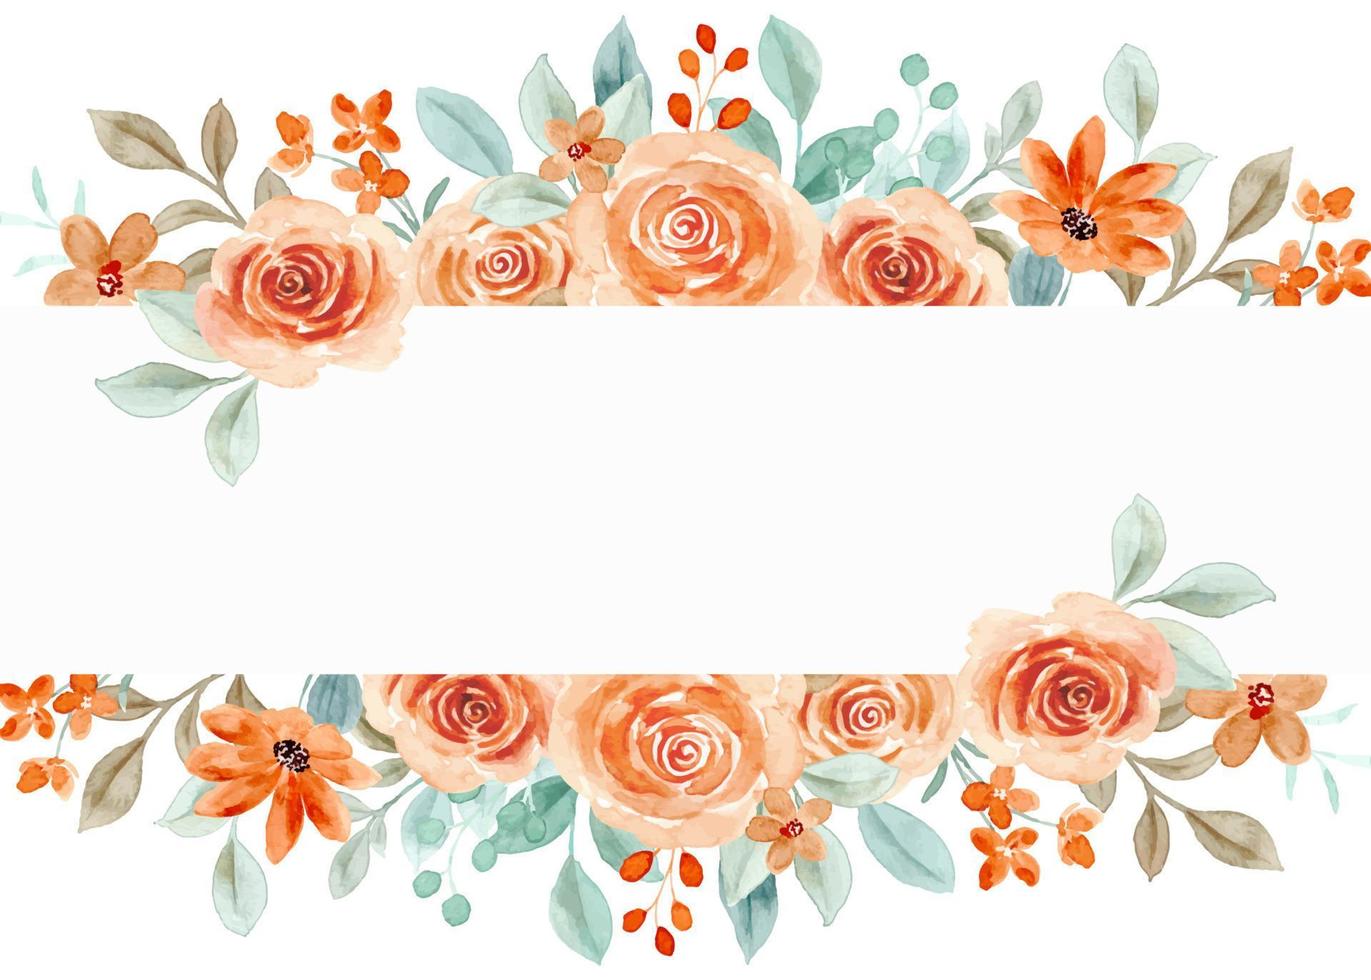 aguarela rosa flor fronteira para casamento, aniversário, cartão, fundo, convite, papel de parede, adesivo, decoração etc. vetor